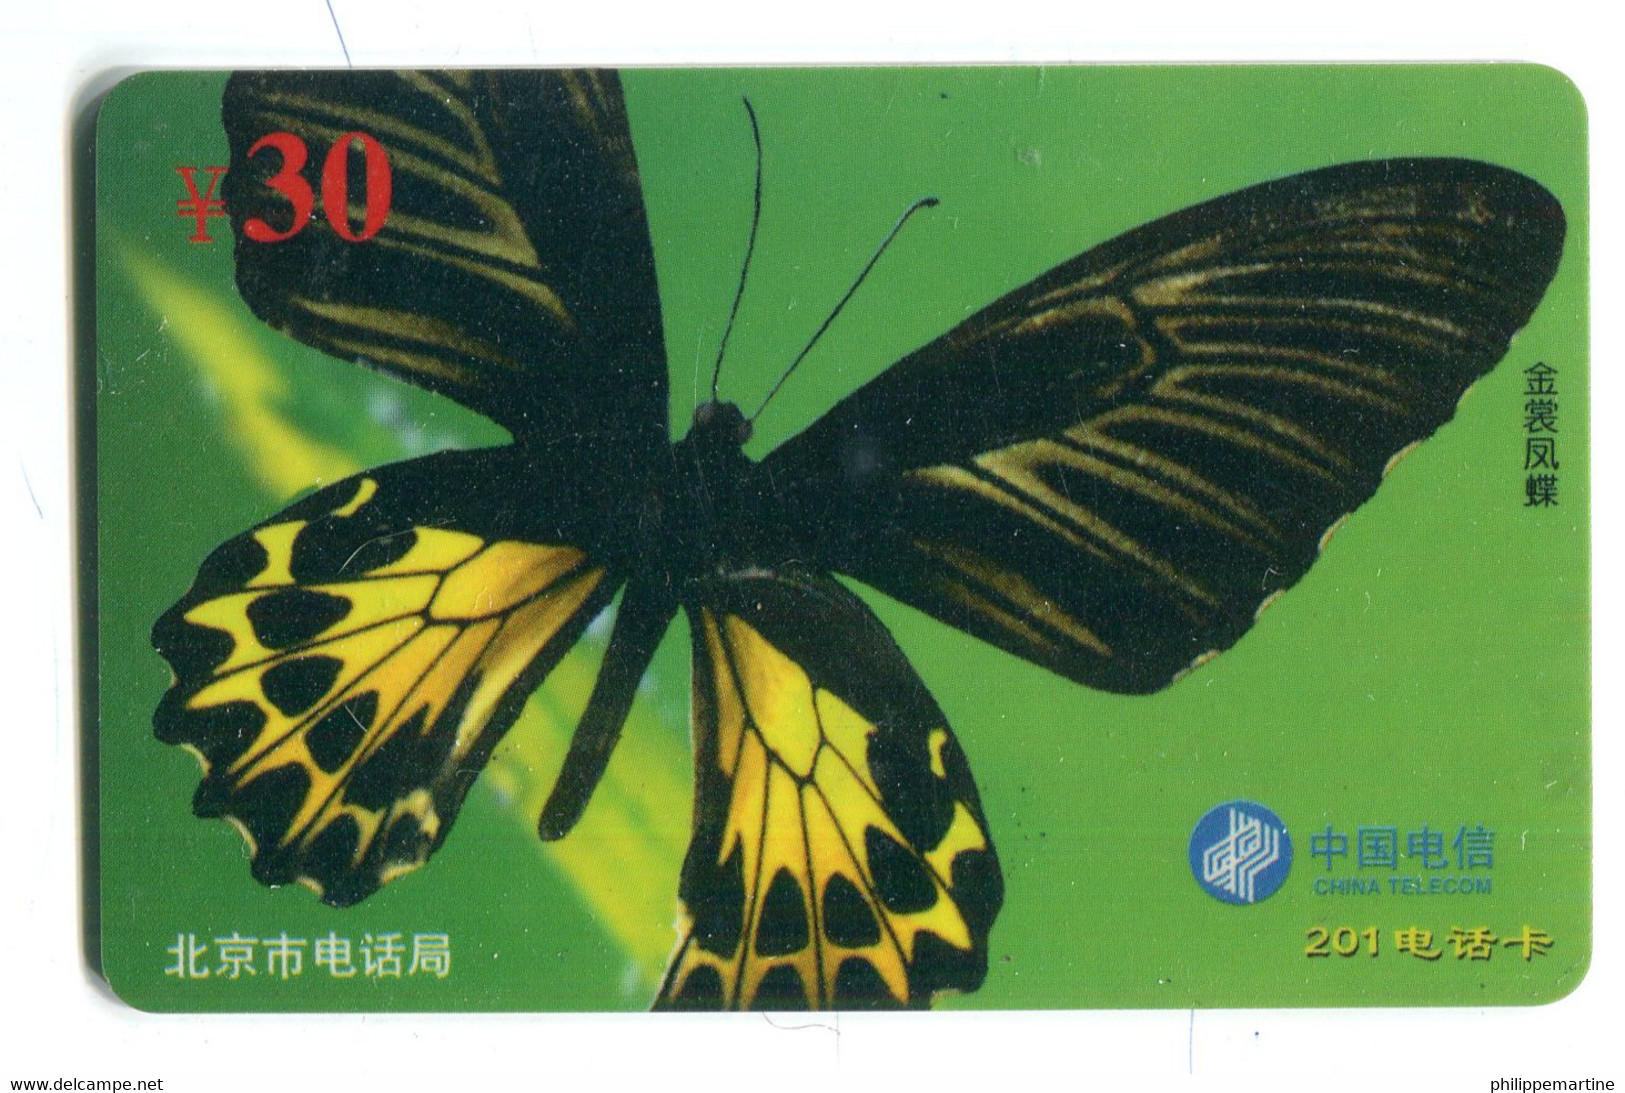 Télécarte China Telecom : Papillon - Butterflies